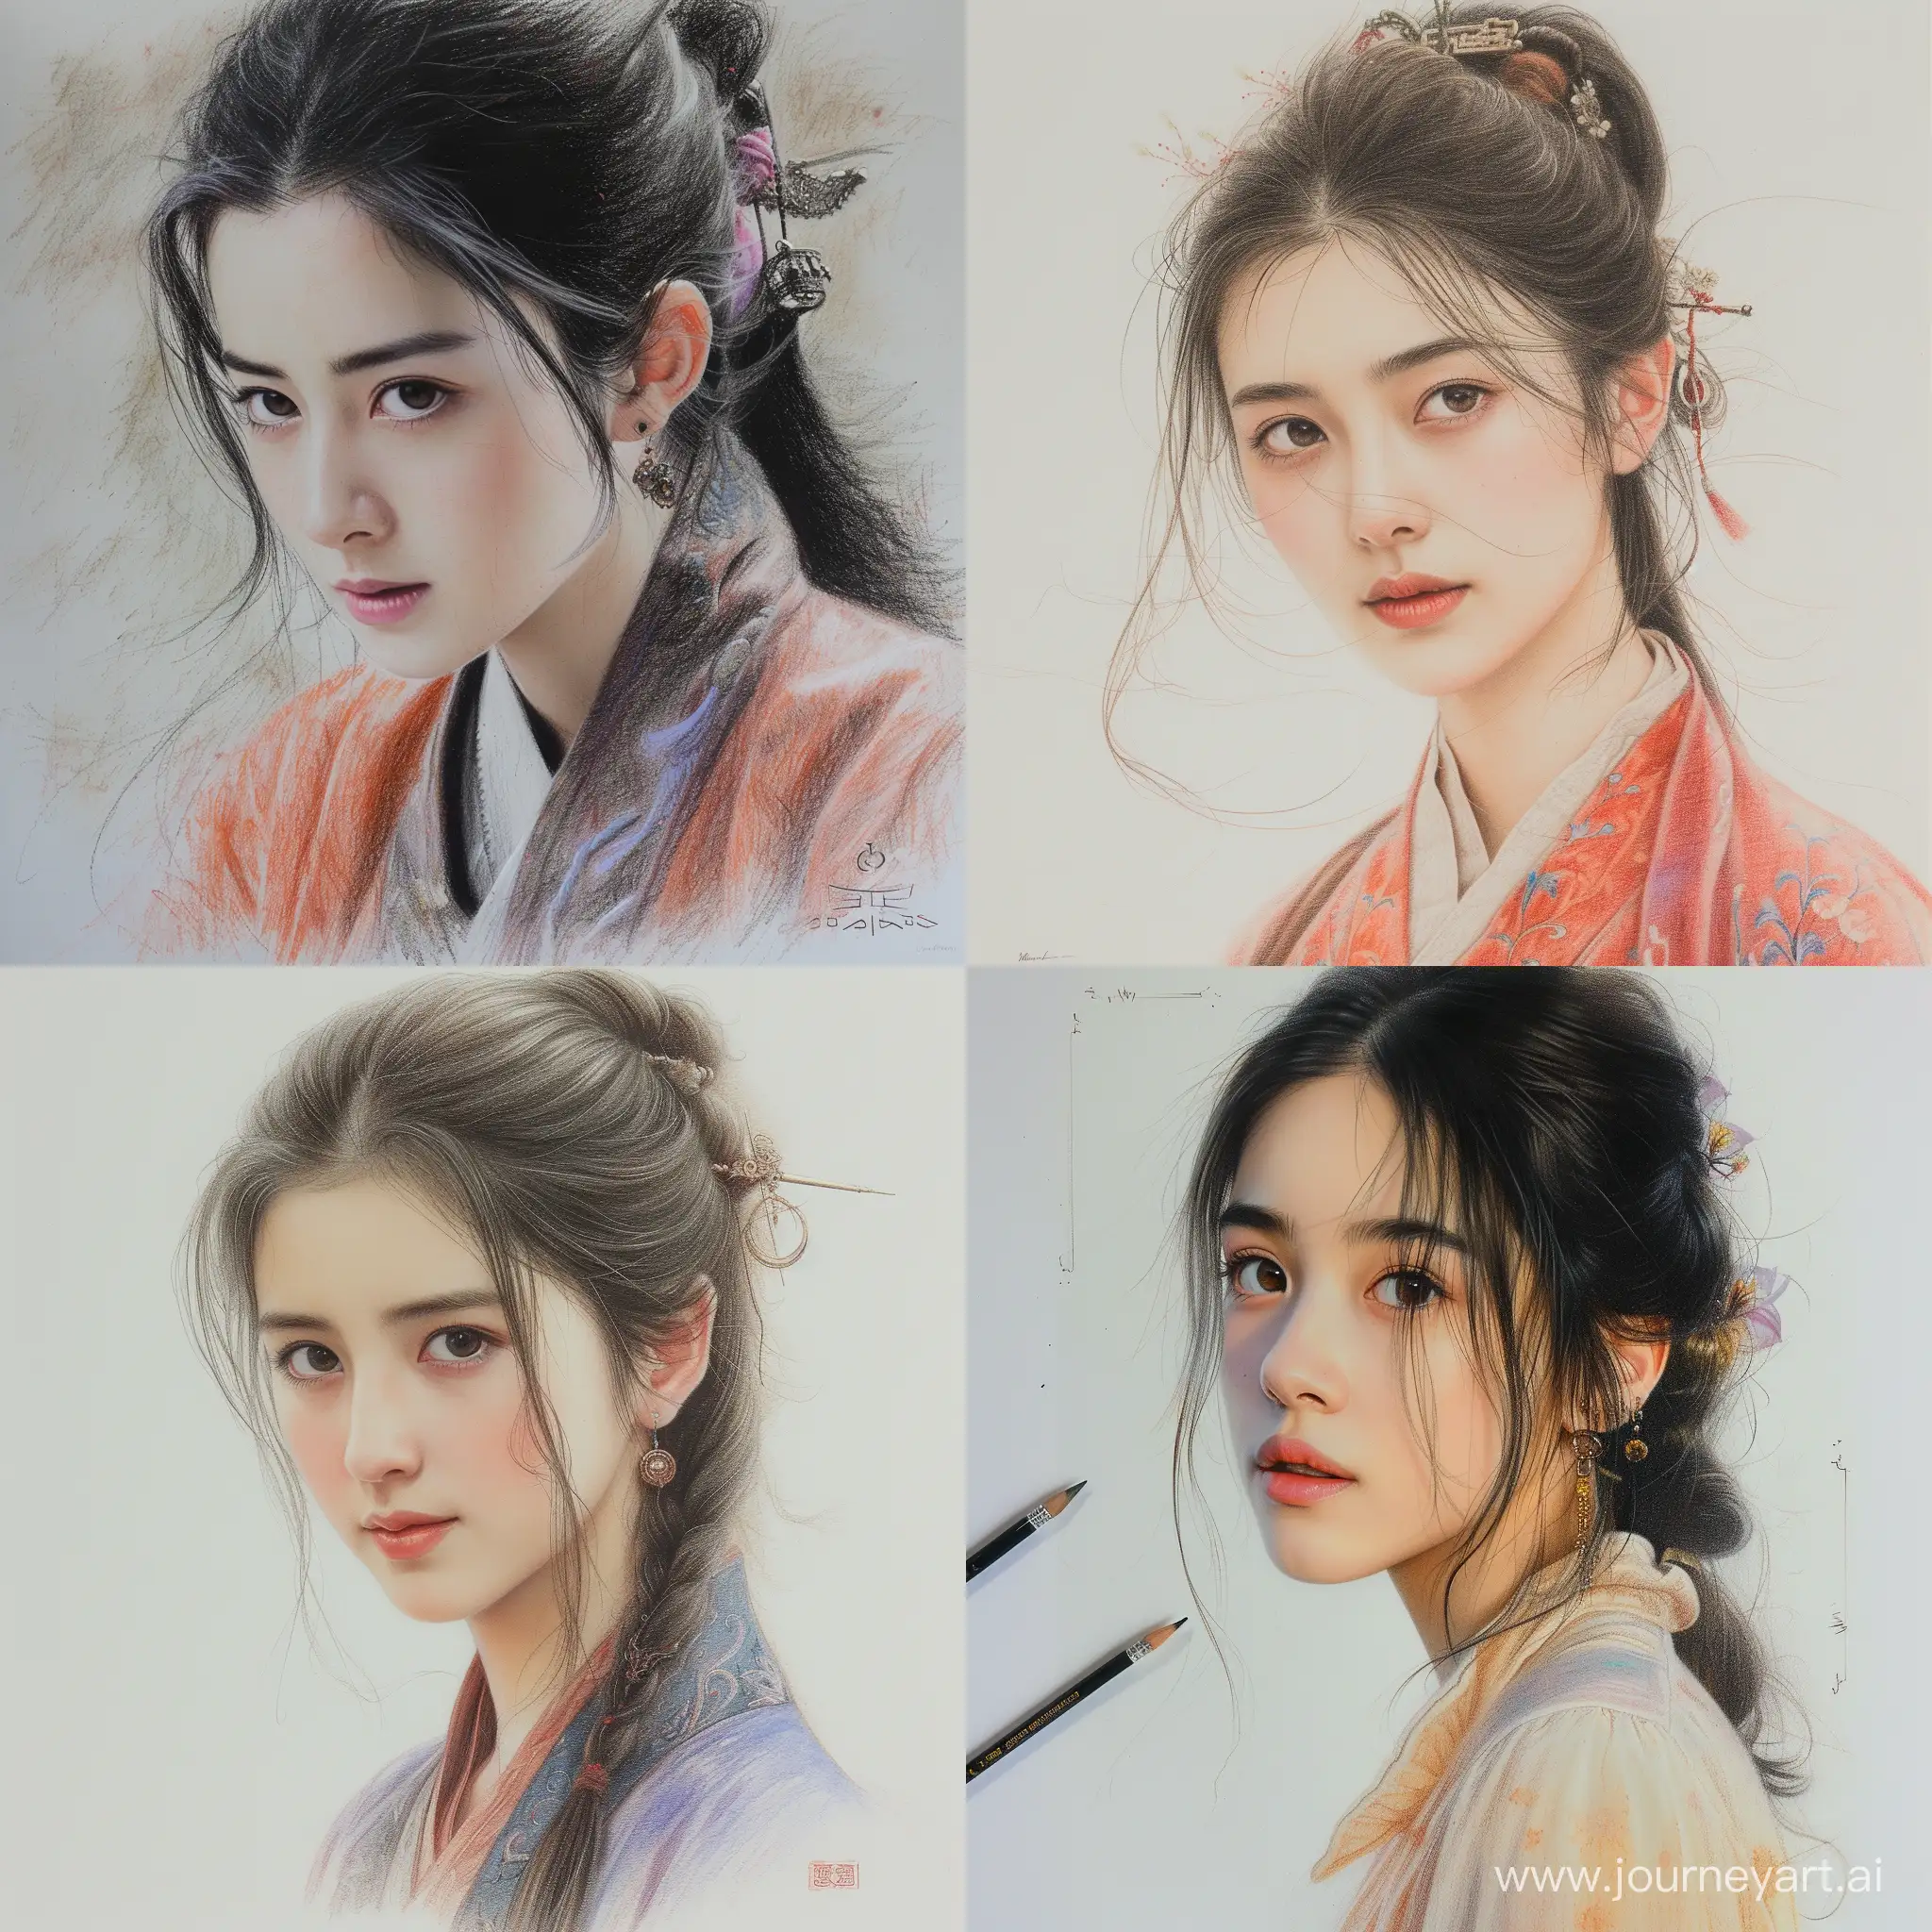 Joyful-Chinese-Woman-in-Autumn-Hanfu-Vibrant-Portrait-Illustration